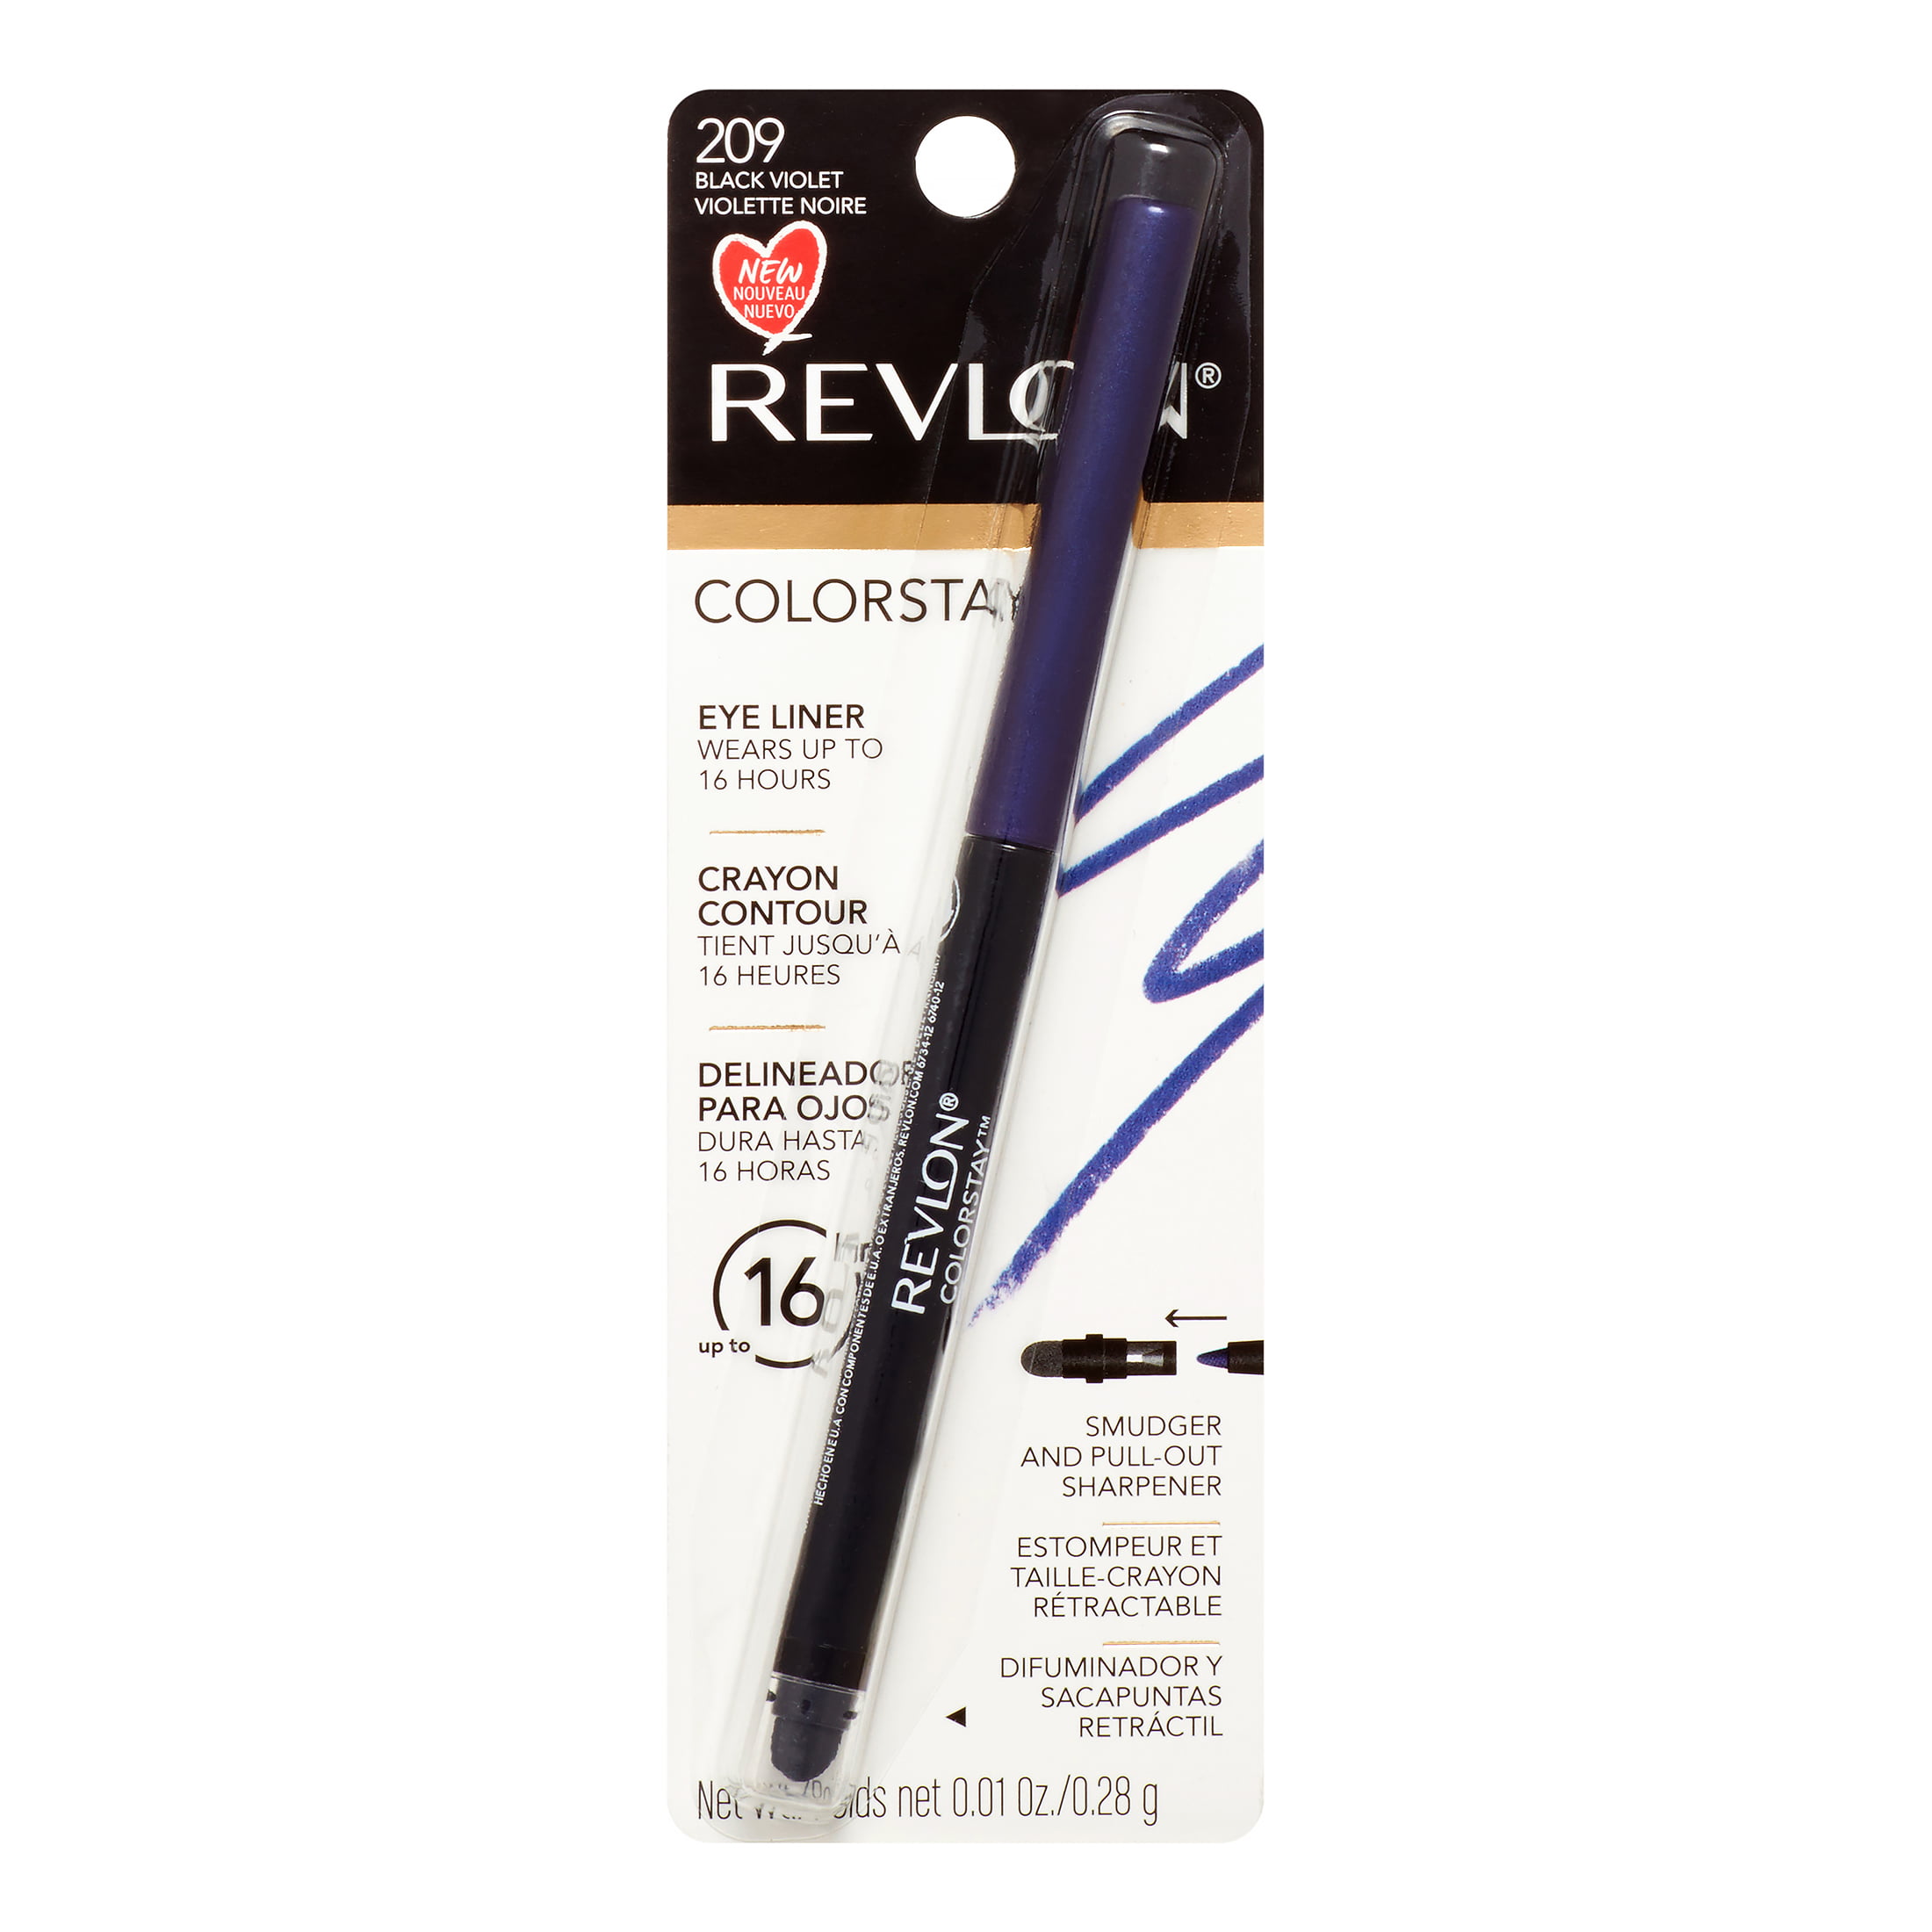 Revlon Colorstay Eyeliner, Black Violet - Walmart.com - 